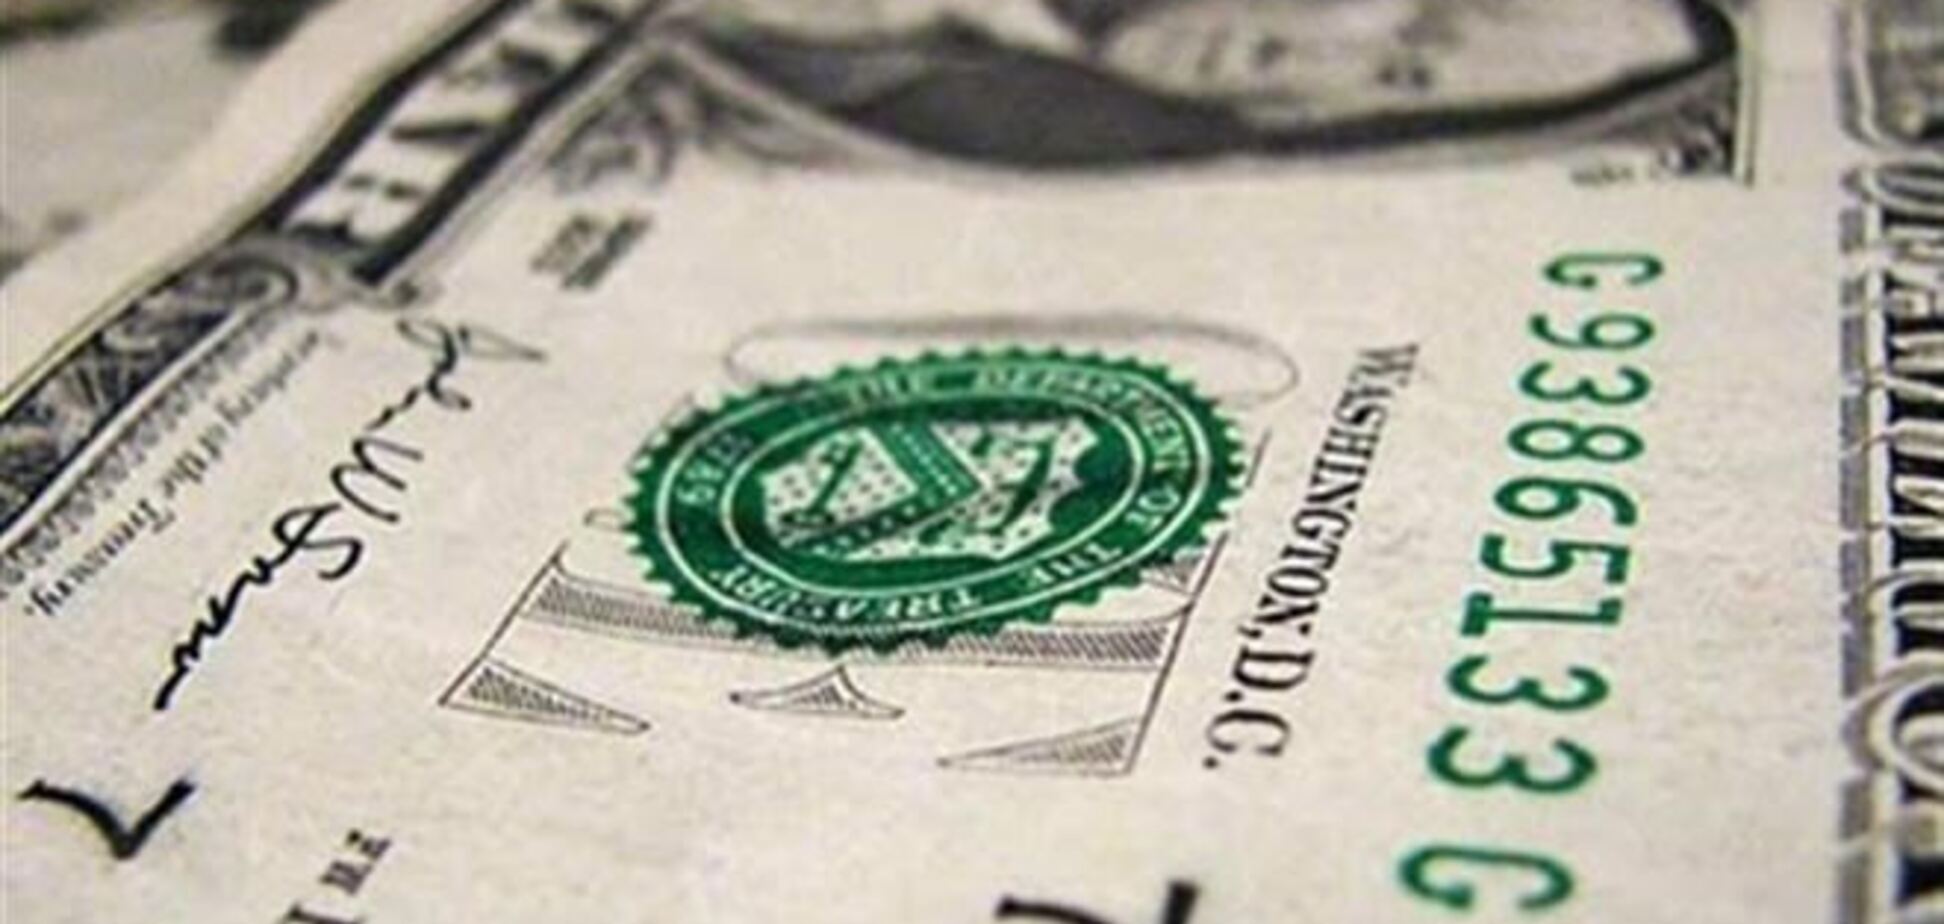 Експерт: долар може подешевшати до 7,5 грн за рахунок припливу валюти